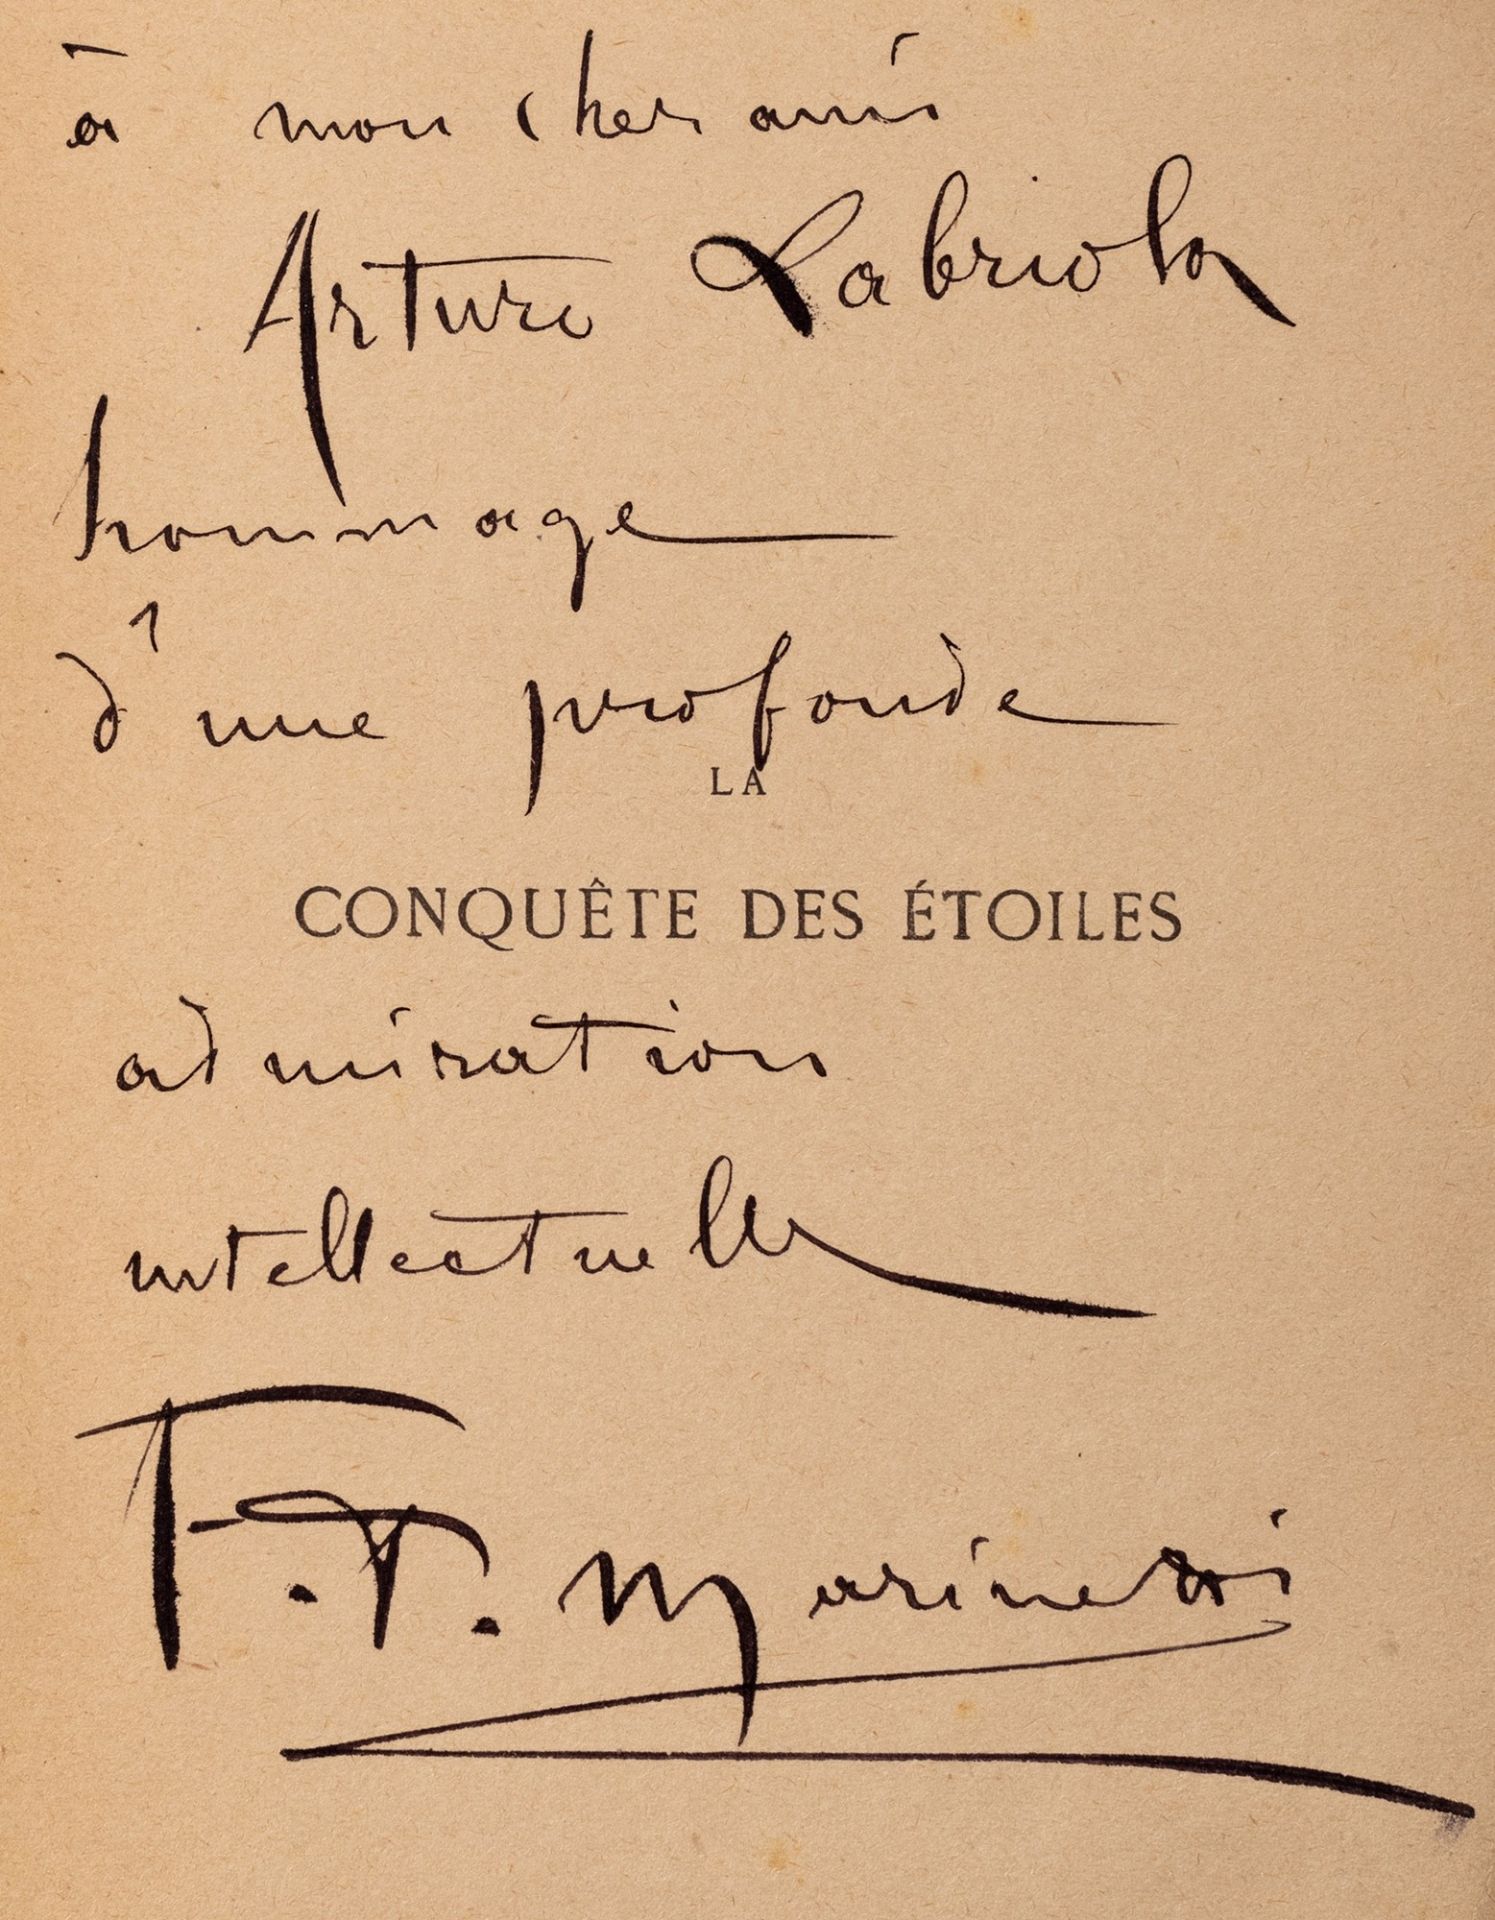 Futurismo - Marinetti, Filippo Tommaso - The Conquete des Etoiles. Poème epique.